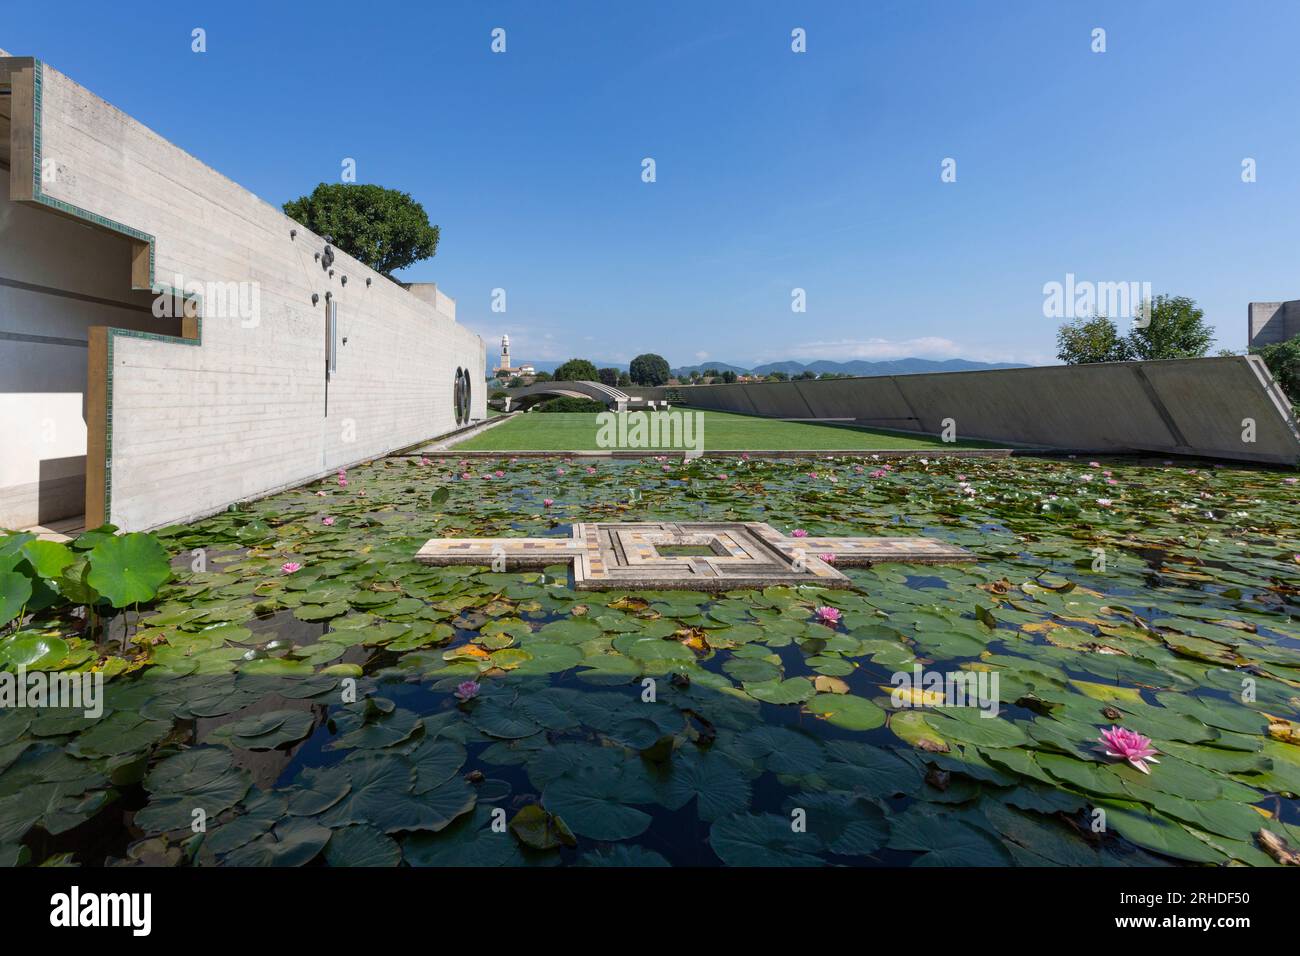 Der Meditationspavillon, umgeben von Pools mit Pflanzen und Seerosen, erinnert an japanische Architektur, Kunst und Zen-Atmosphäre Stockfoto